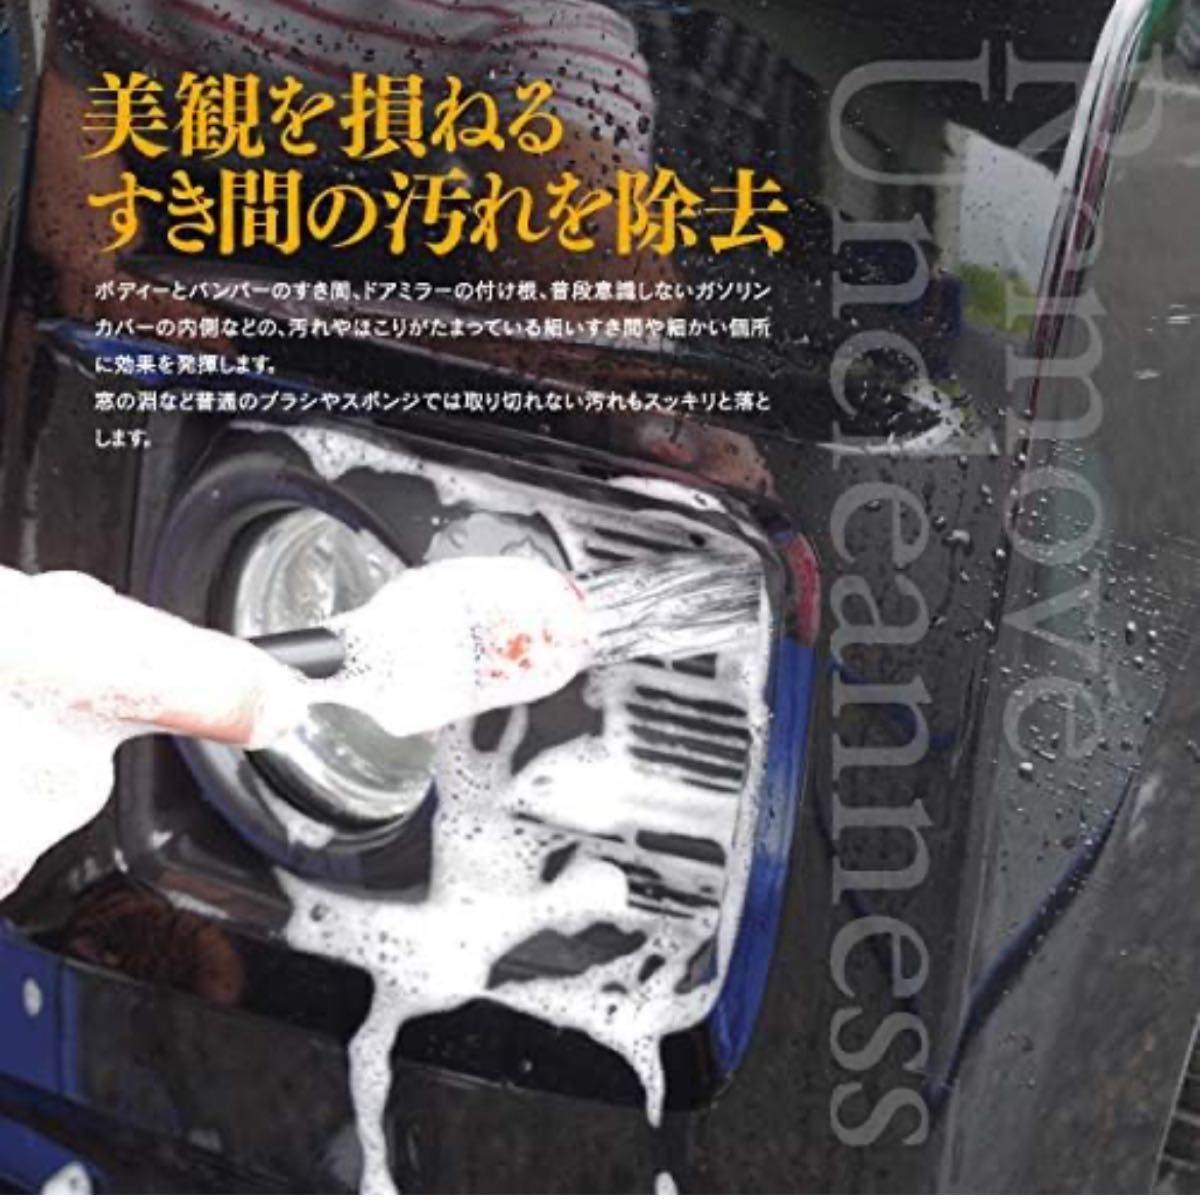 隙間 タイヤ 洗車ブラシ ホイール 筆 バイク クリーニング ハケ 洗浄 5本セット 細かい汚れを落とす